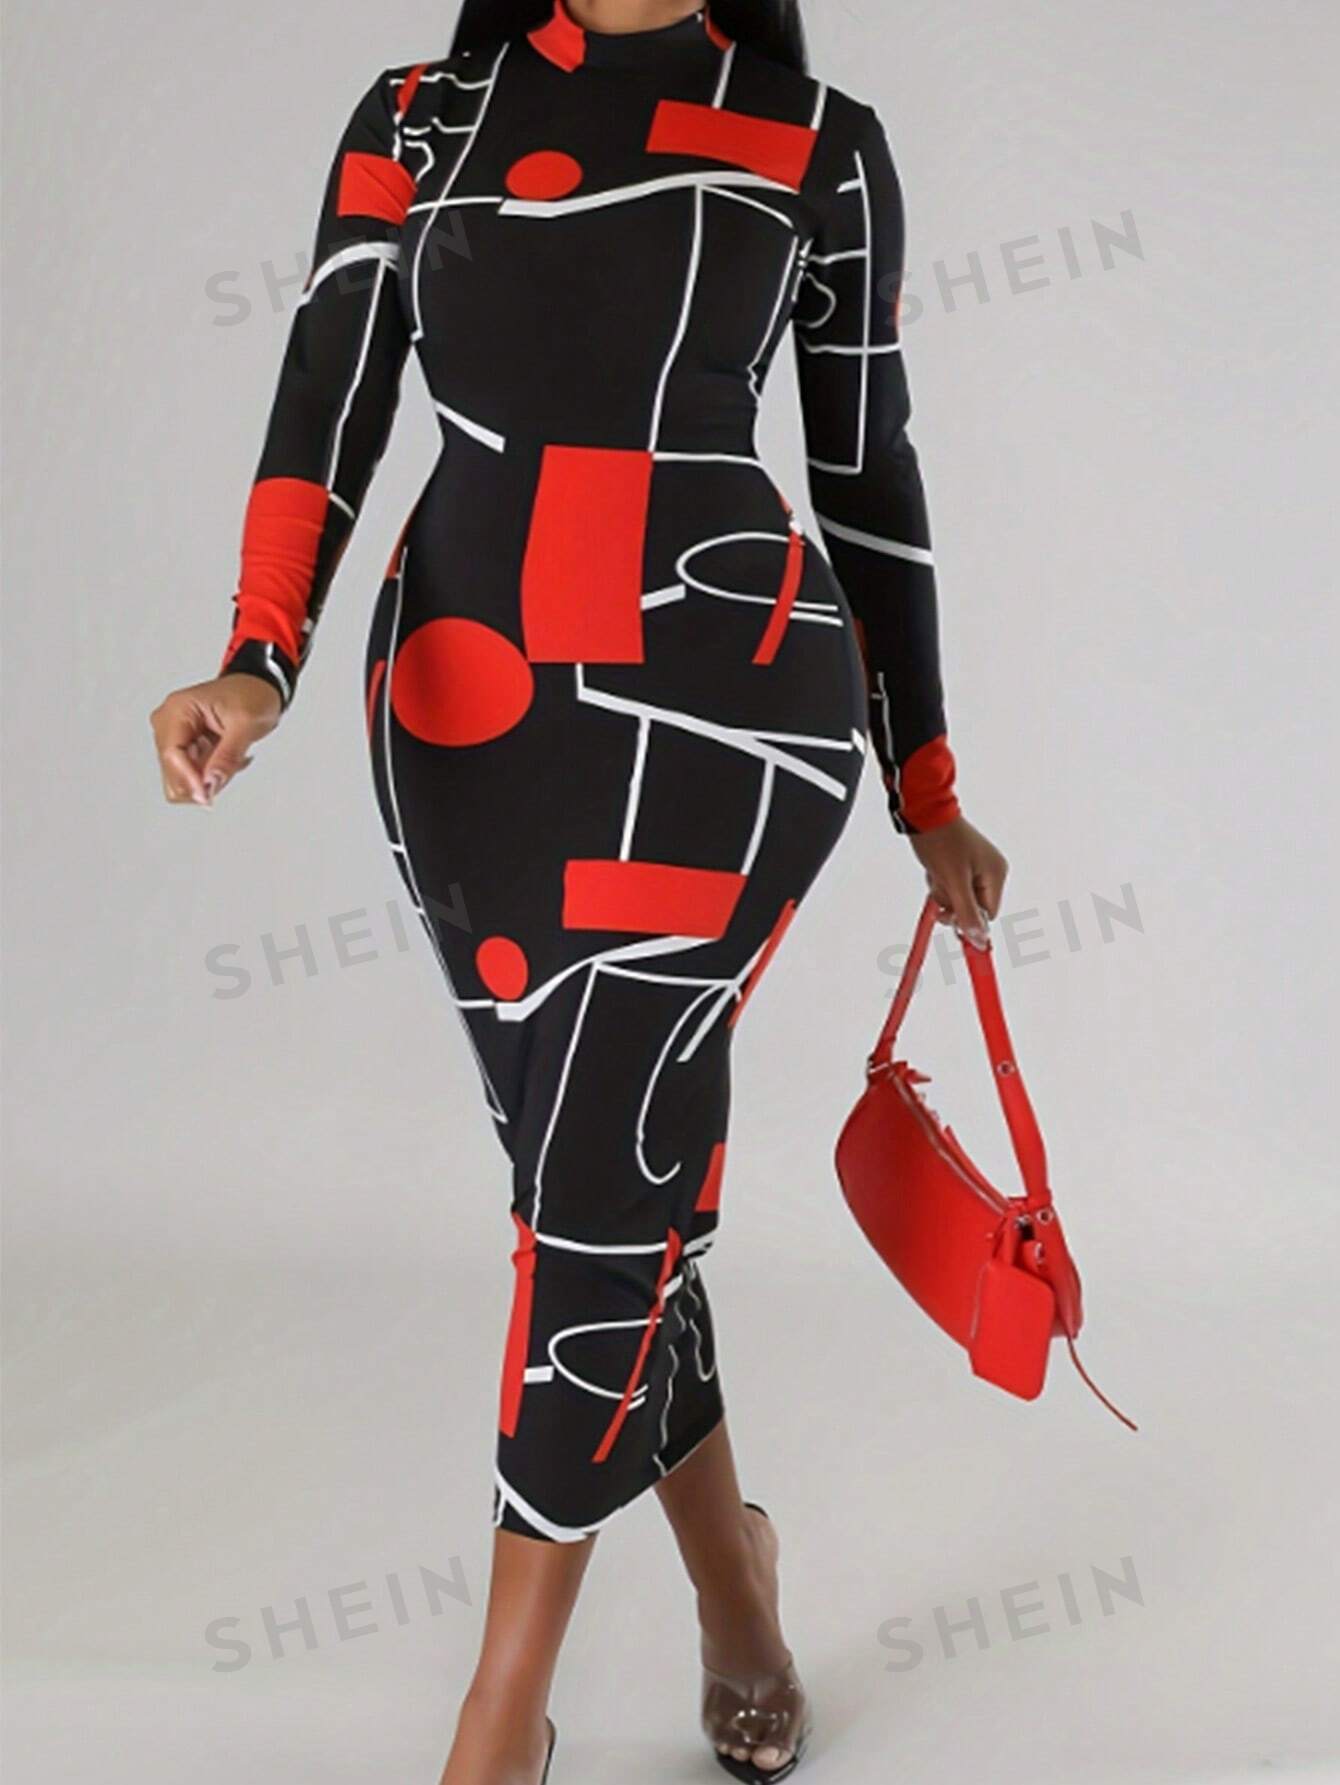 SHEIN Lady Женское облегающее платье с воротником-стойкой и произвольным принтом, красный и черный